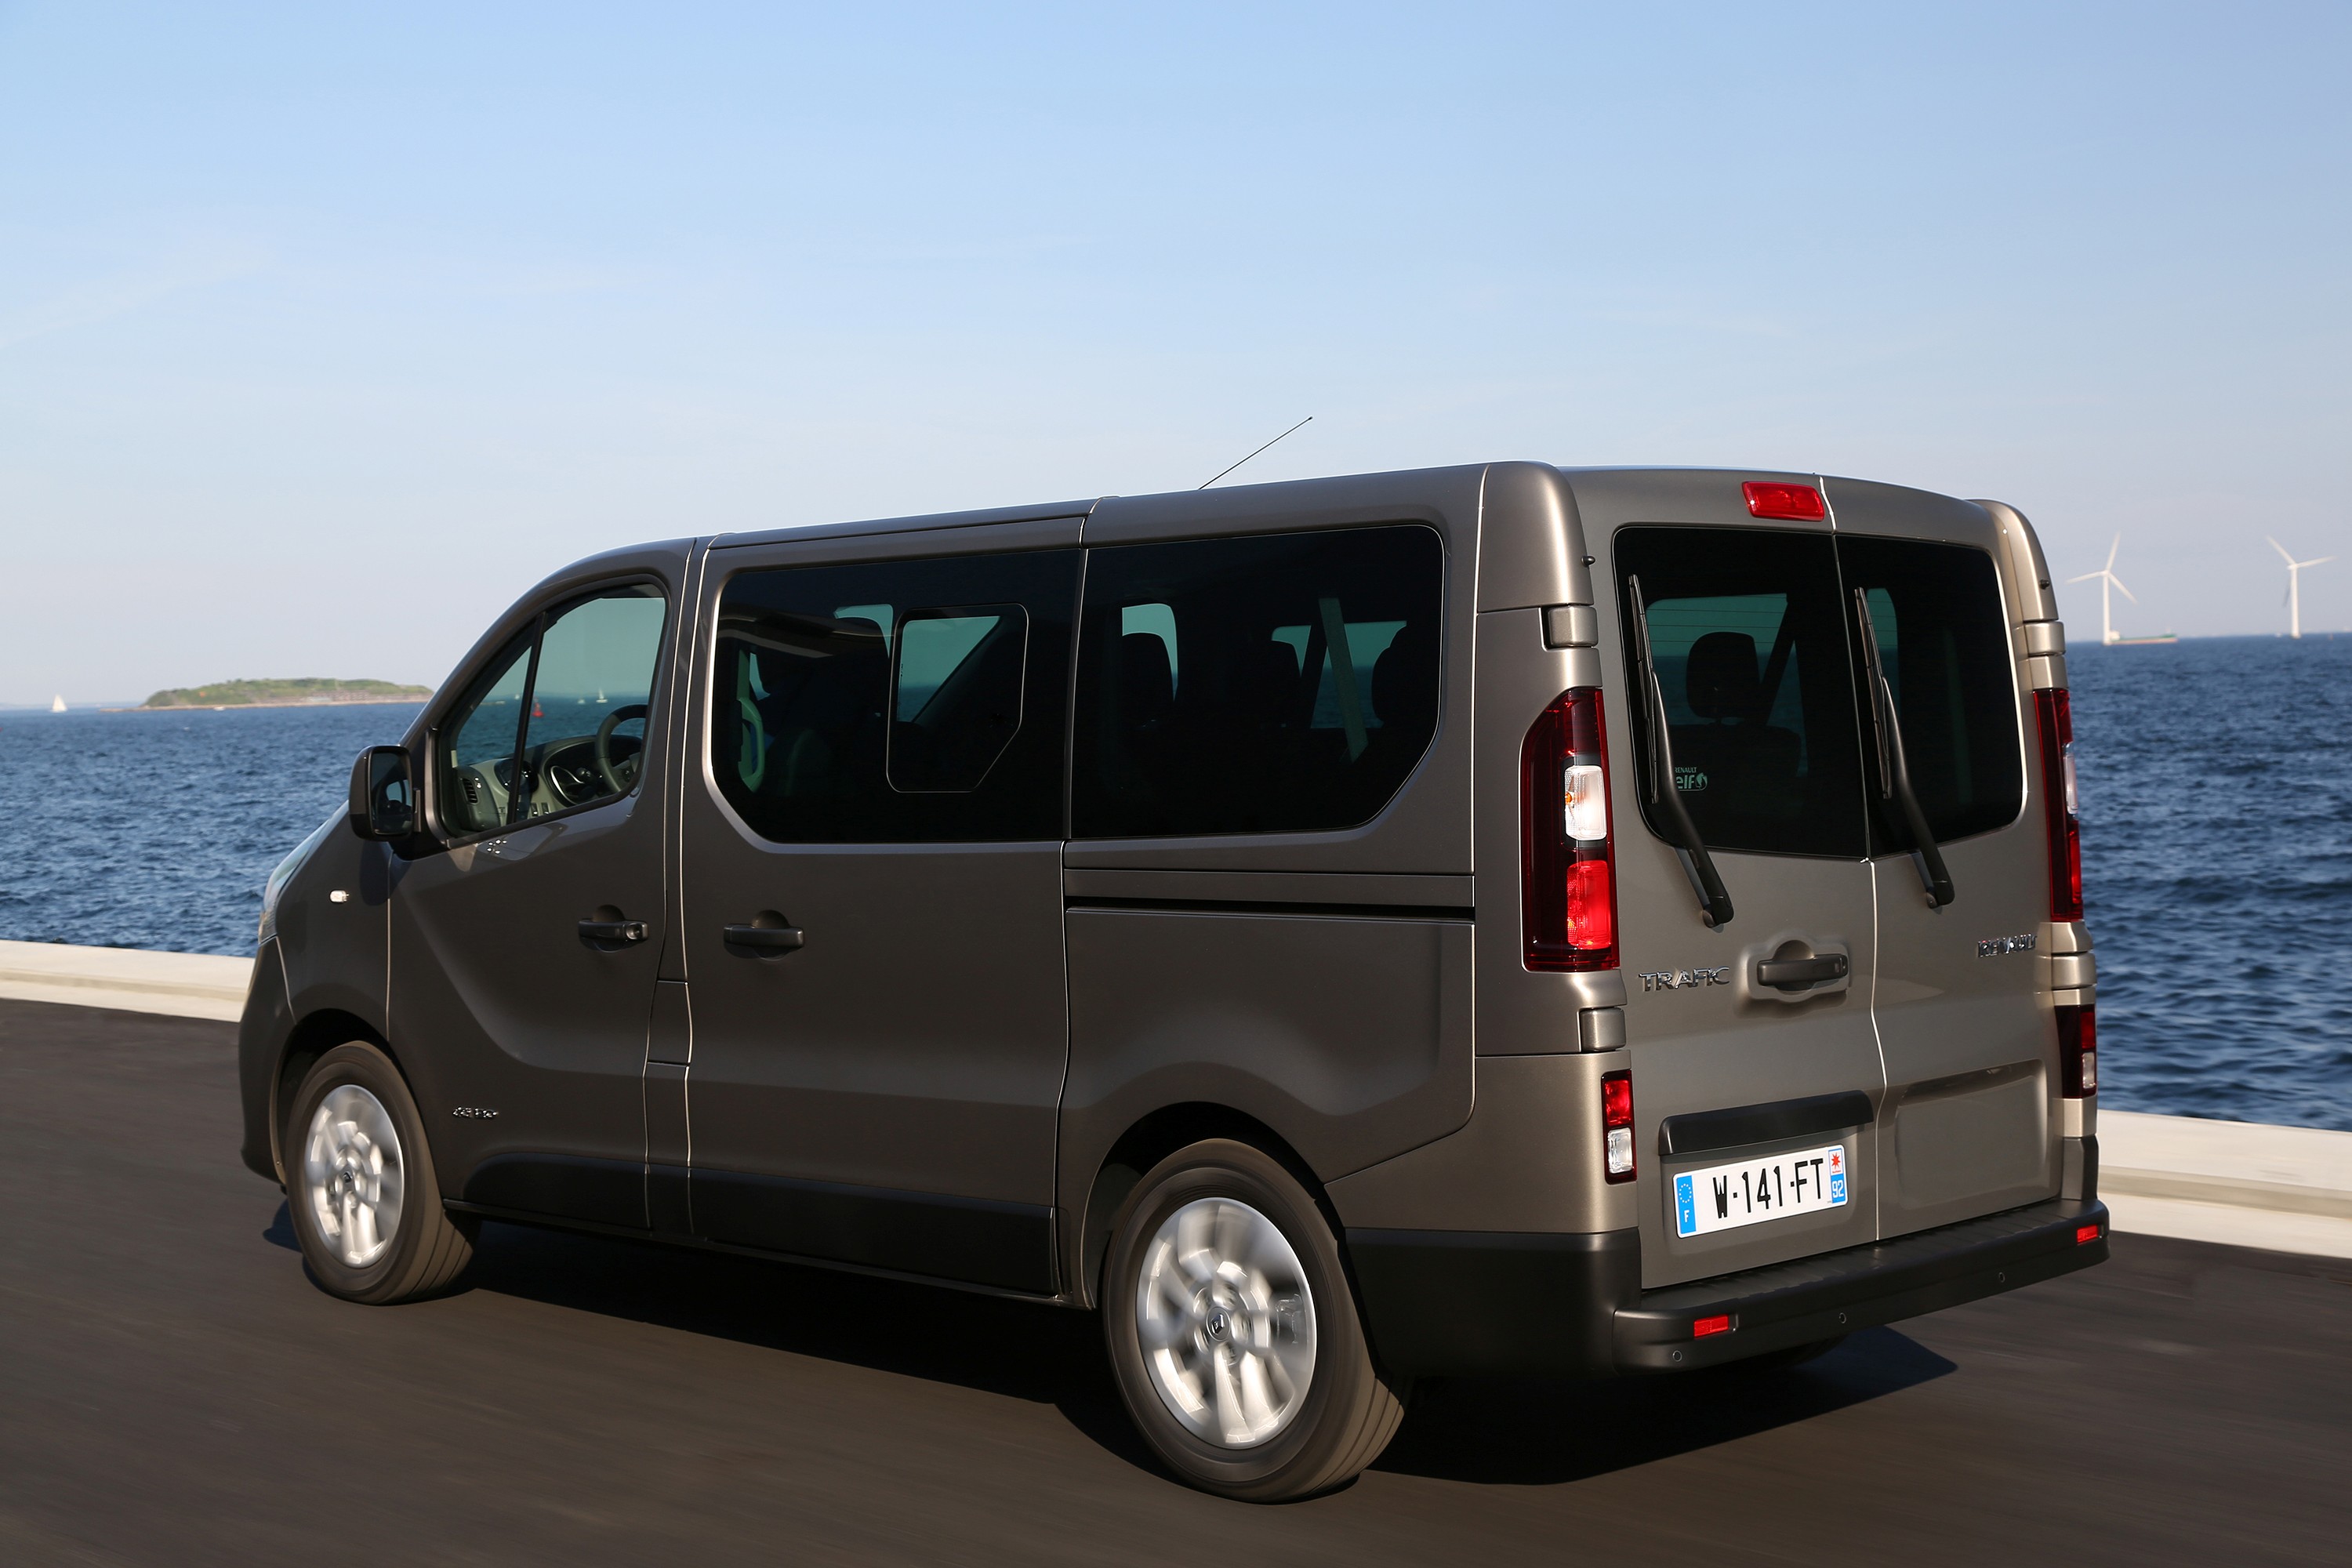 Renault Trafic Combi minivan specifications